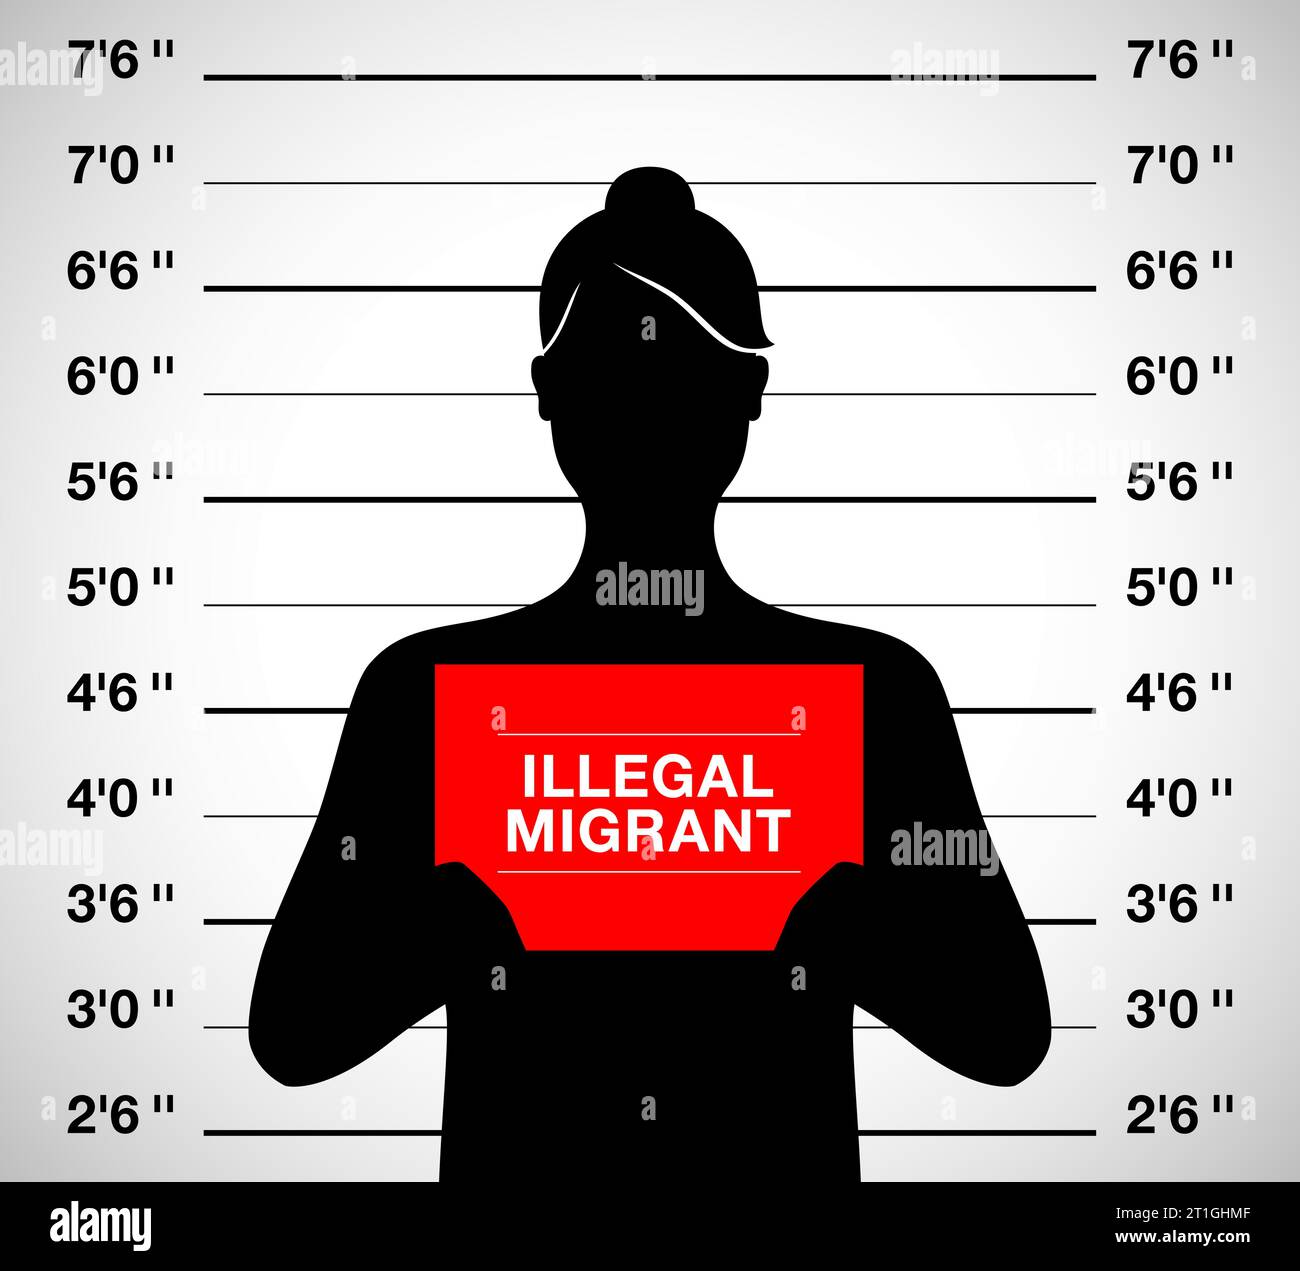 Femme migrante illégale debout sur un fond de prise de vue photo mugshot, illustration vectorielle. Illustration de Vecteur